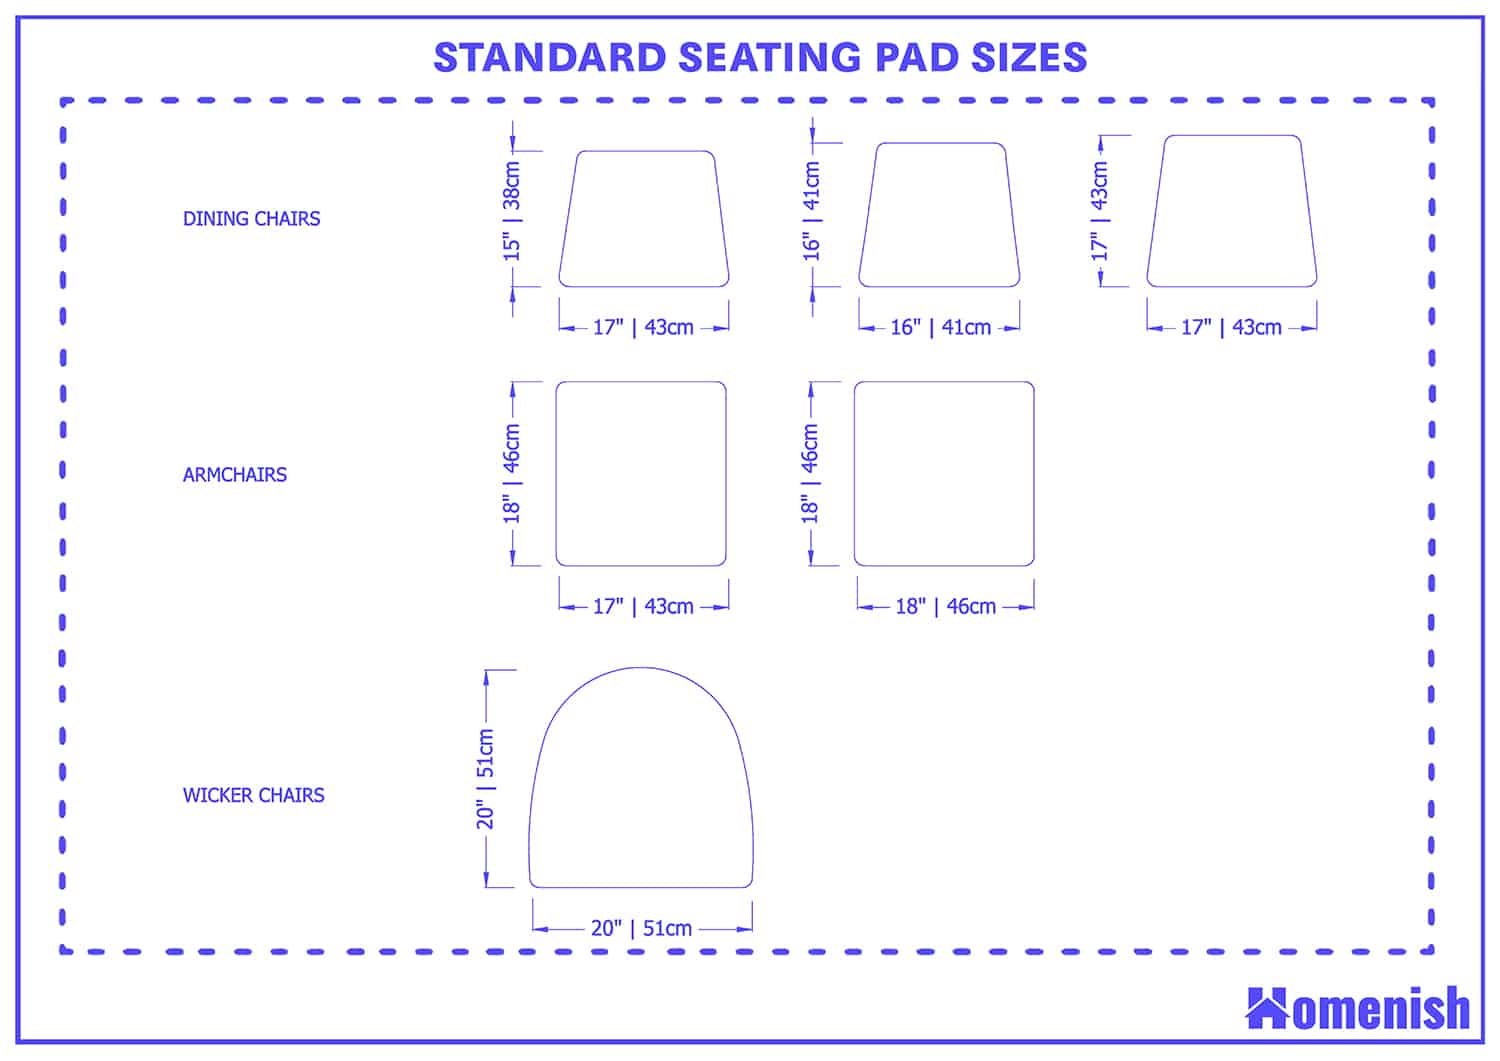 不同類型椅子的標準座椅墊尺寸